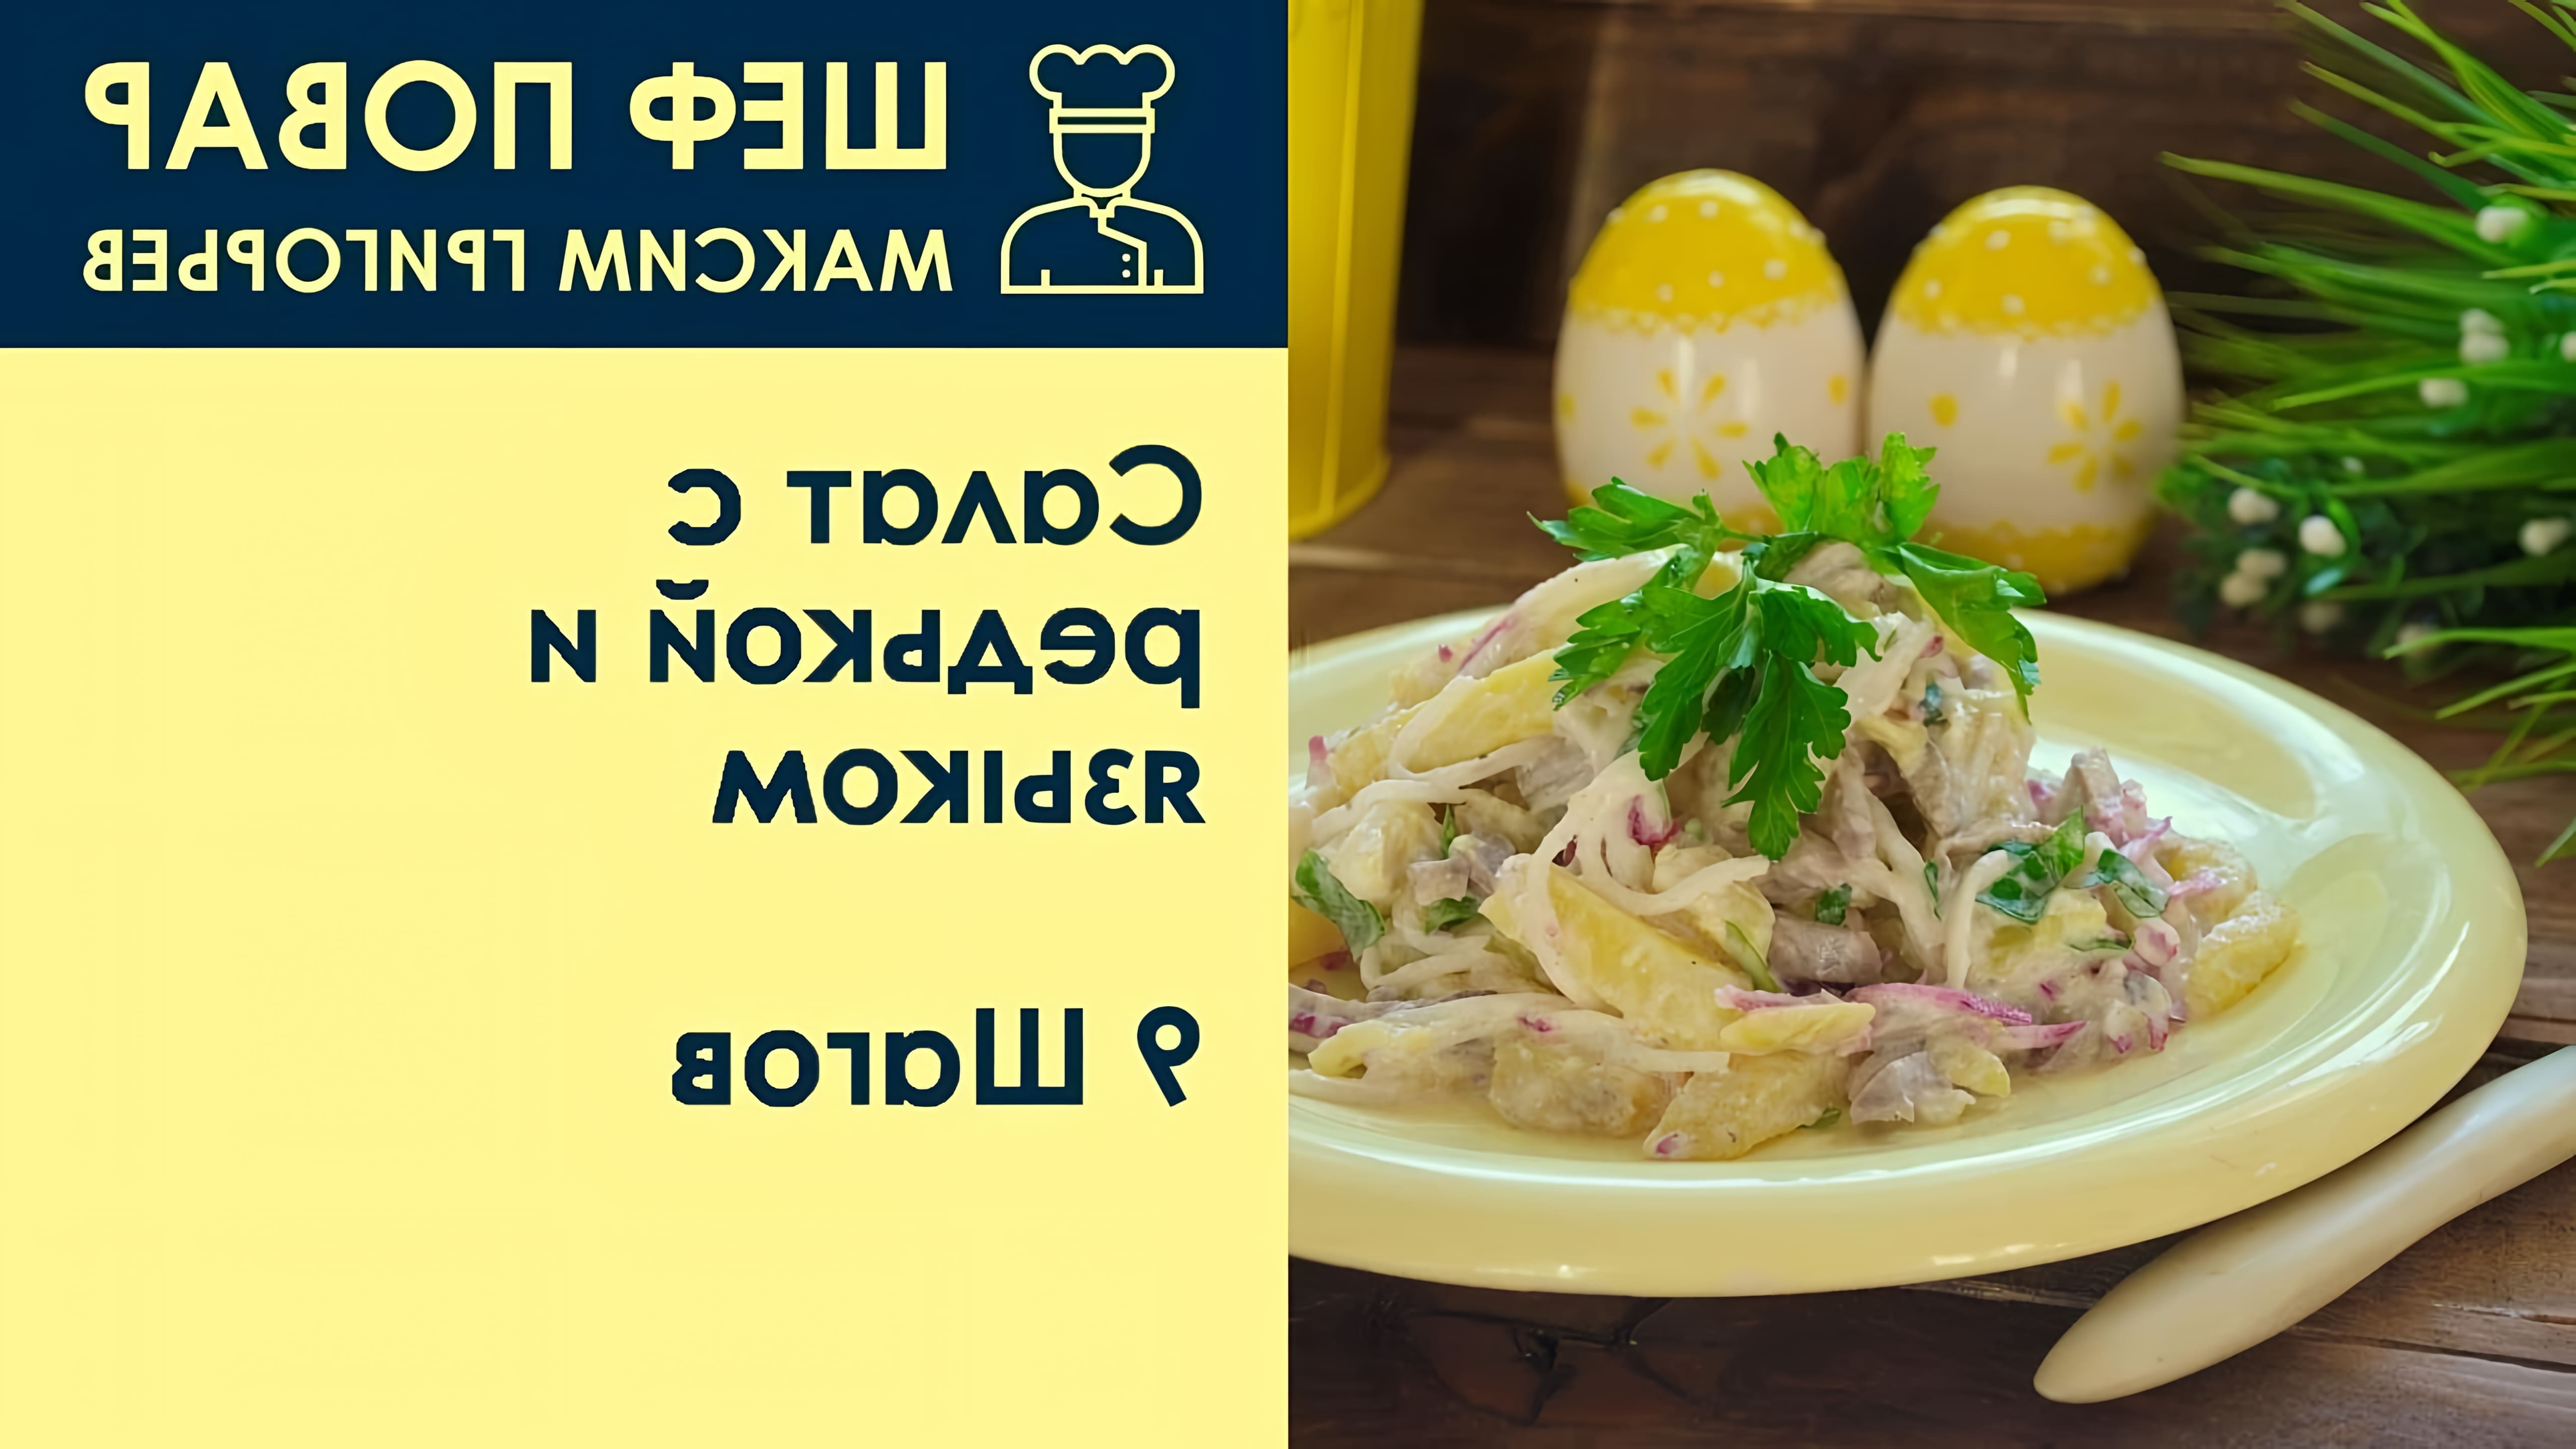 В этом видео шеф-повар Максим Григорьев демонстрирует процесс приготовления салата с редькой и языком